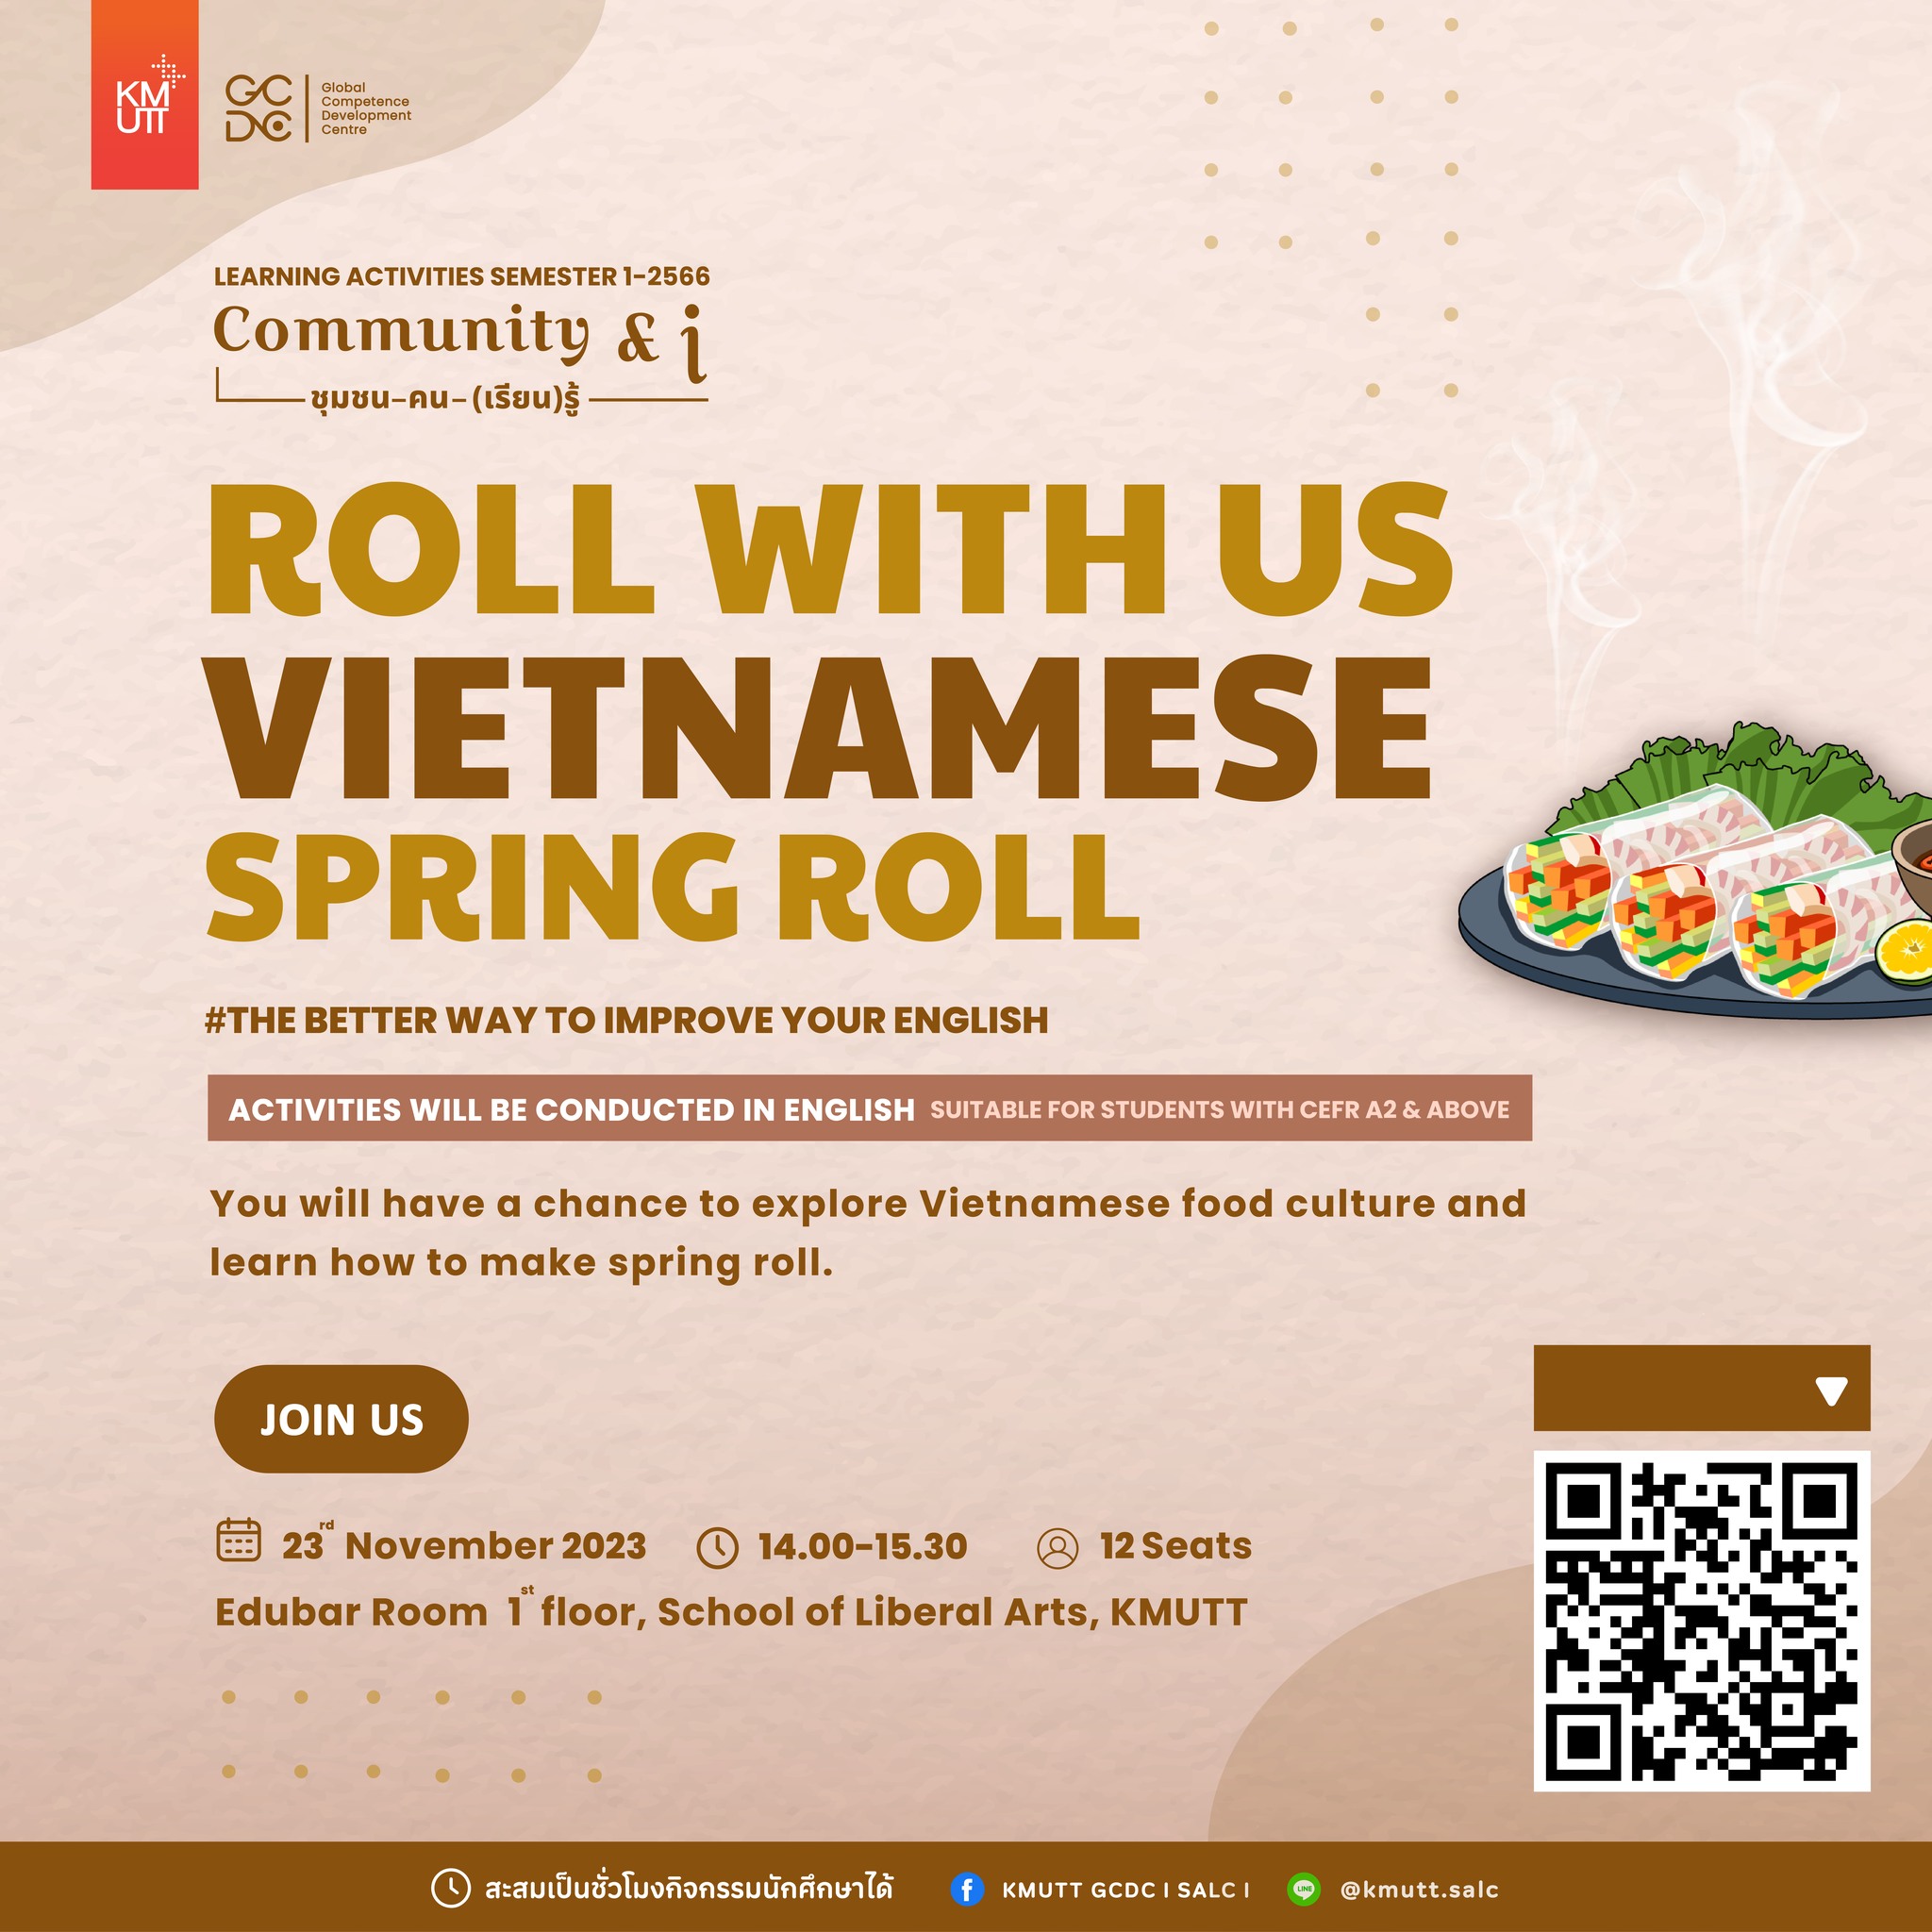  ใครกำลังมองหา กิจกรรมฝึกทักษะภาษาอังกฤษอยู่...  GCDC เราขอนำเสนอกิจกรรม "Roll with us: Vietnamese Spring Roll" 